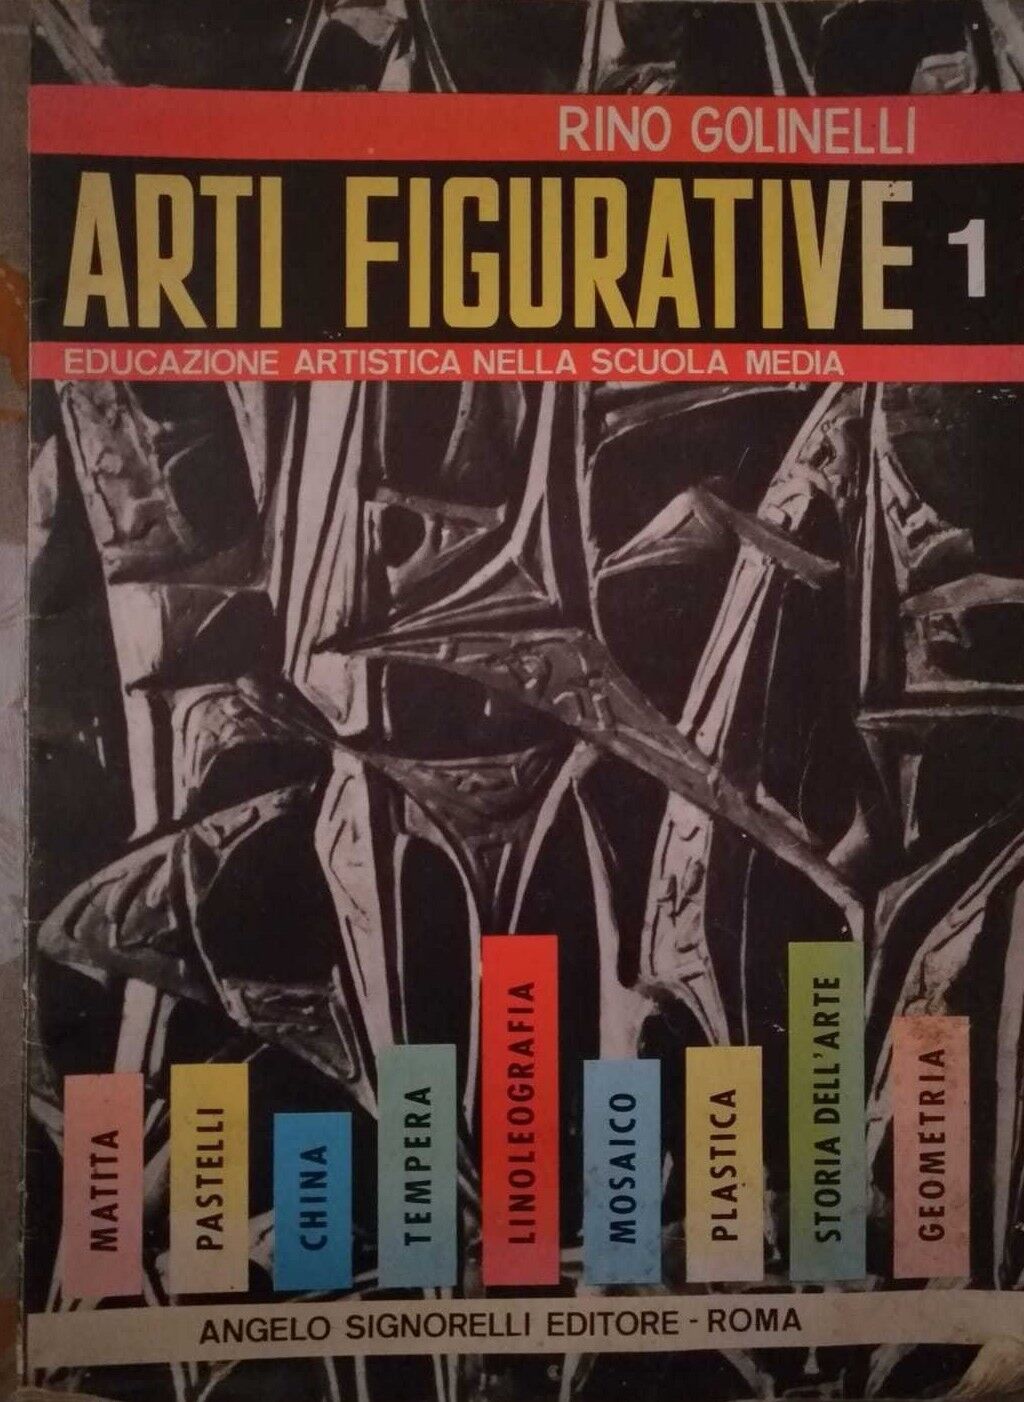 Arti figurative 1- Rino Golinelli,1967,Angelo Signorelli Editore - S